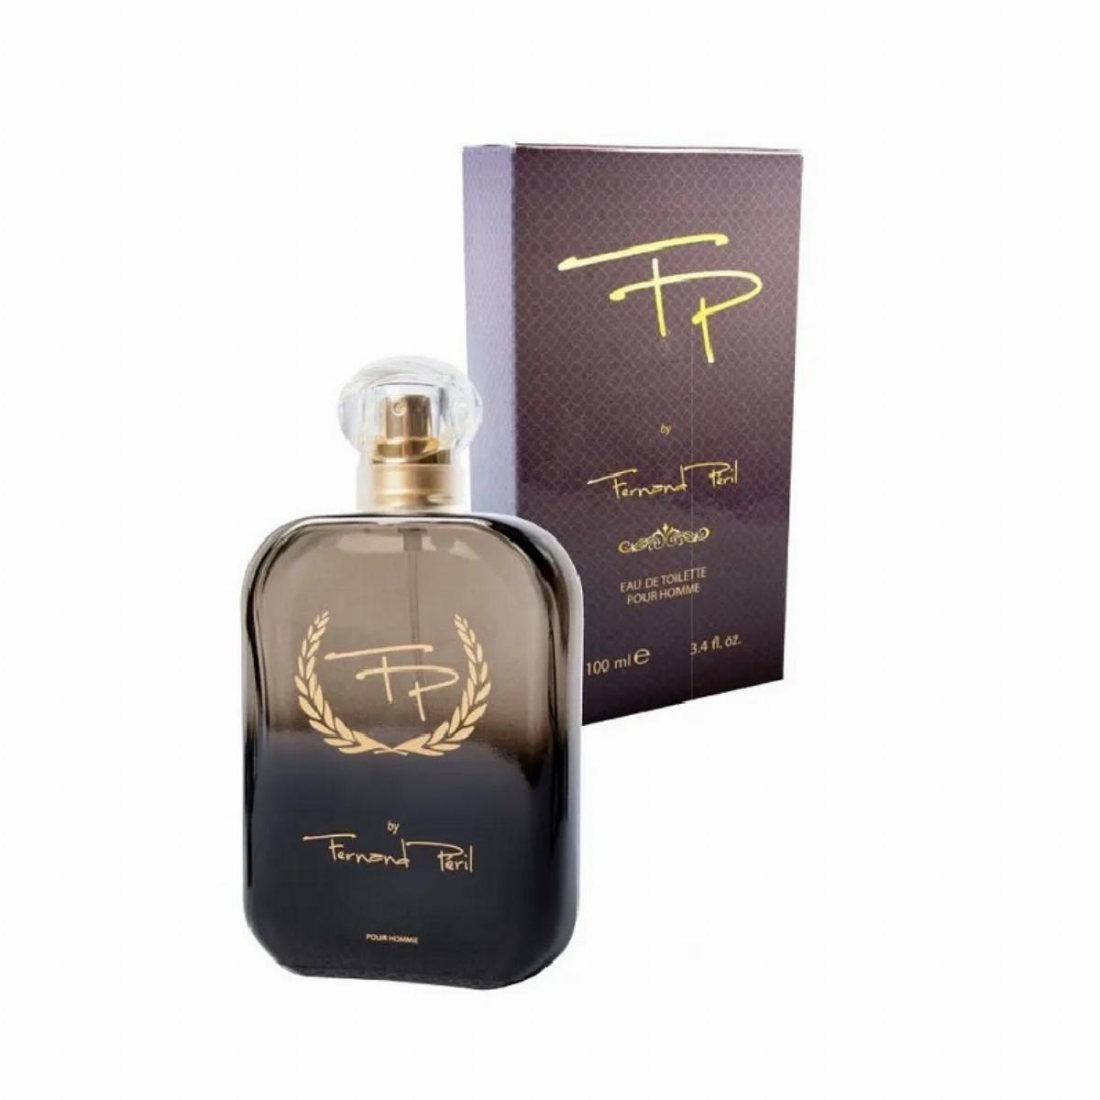 FP de Fernand Peril - Parfum Phéromone Homme - 100 ml